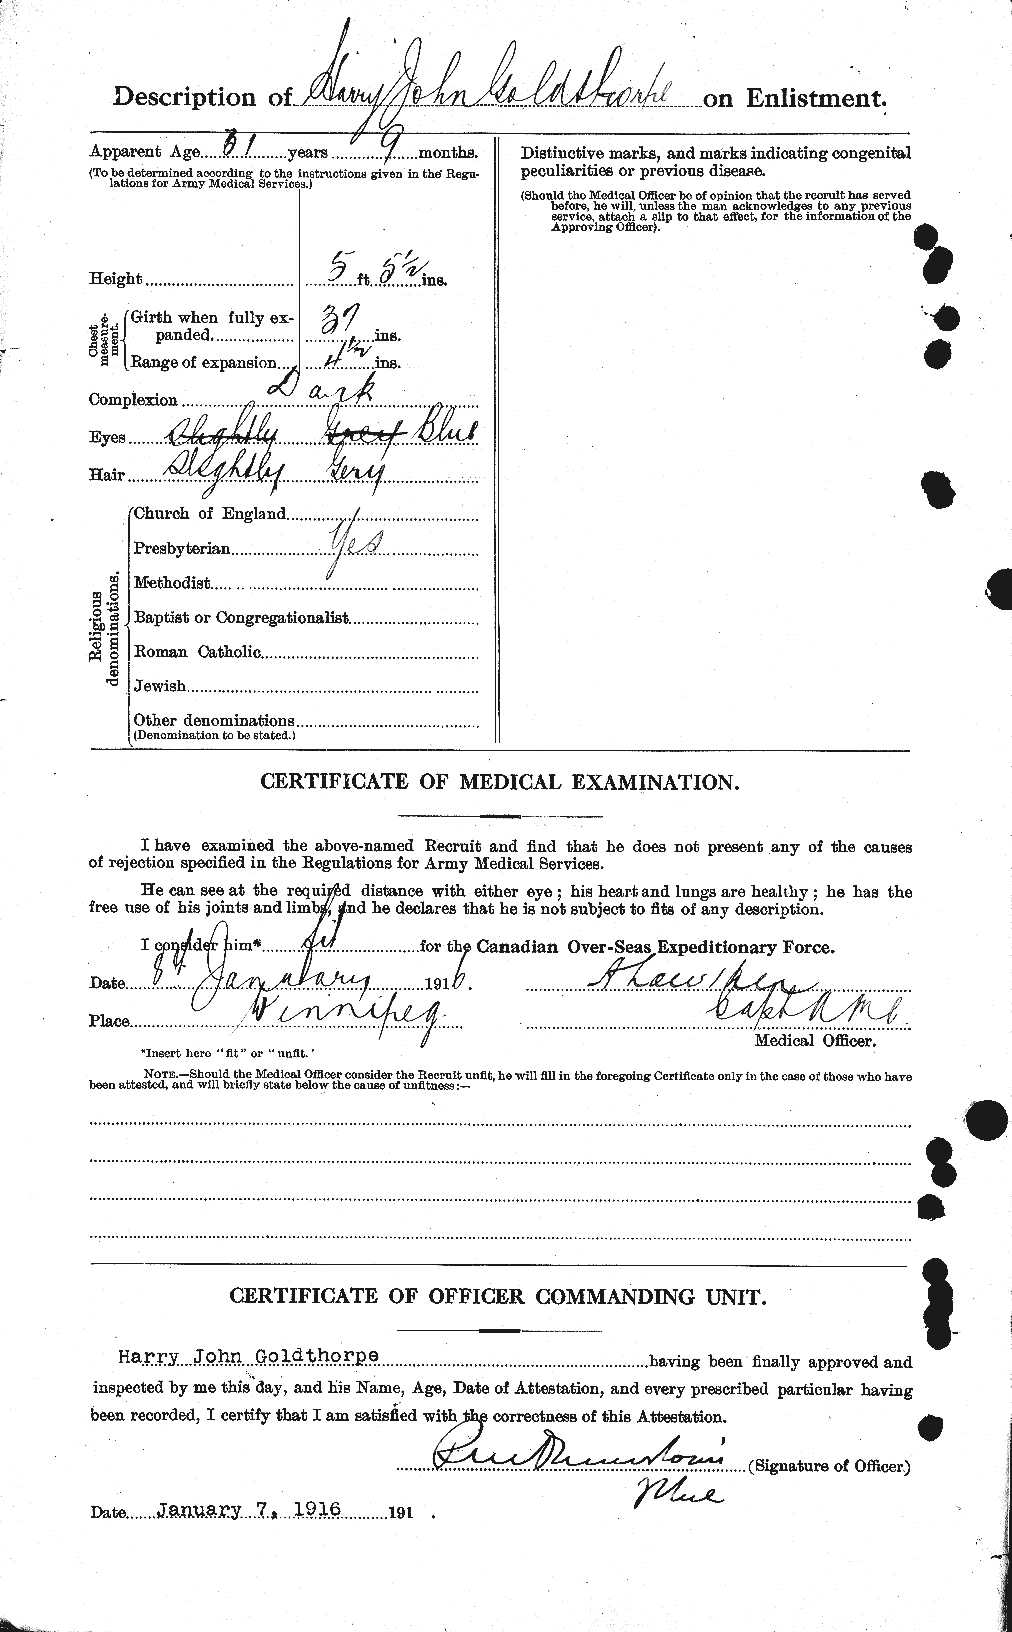 Dossiers du Personnel de la Première Guerre mondiale - CEC 354164b